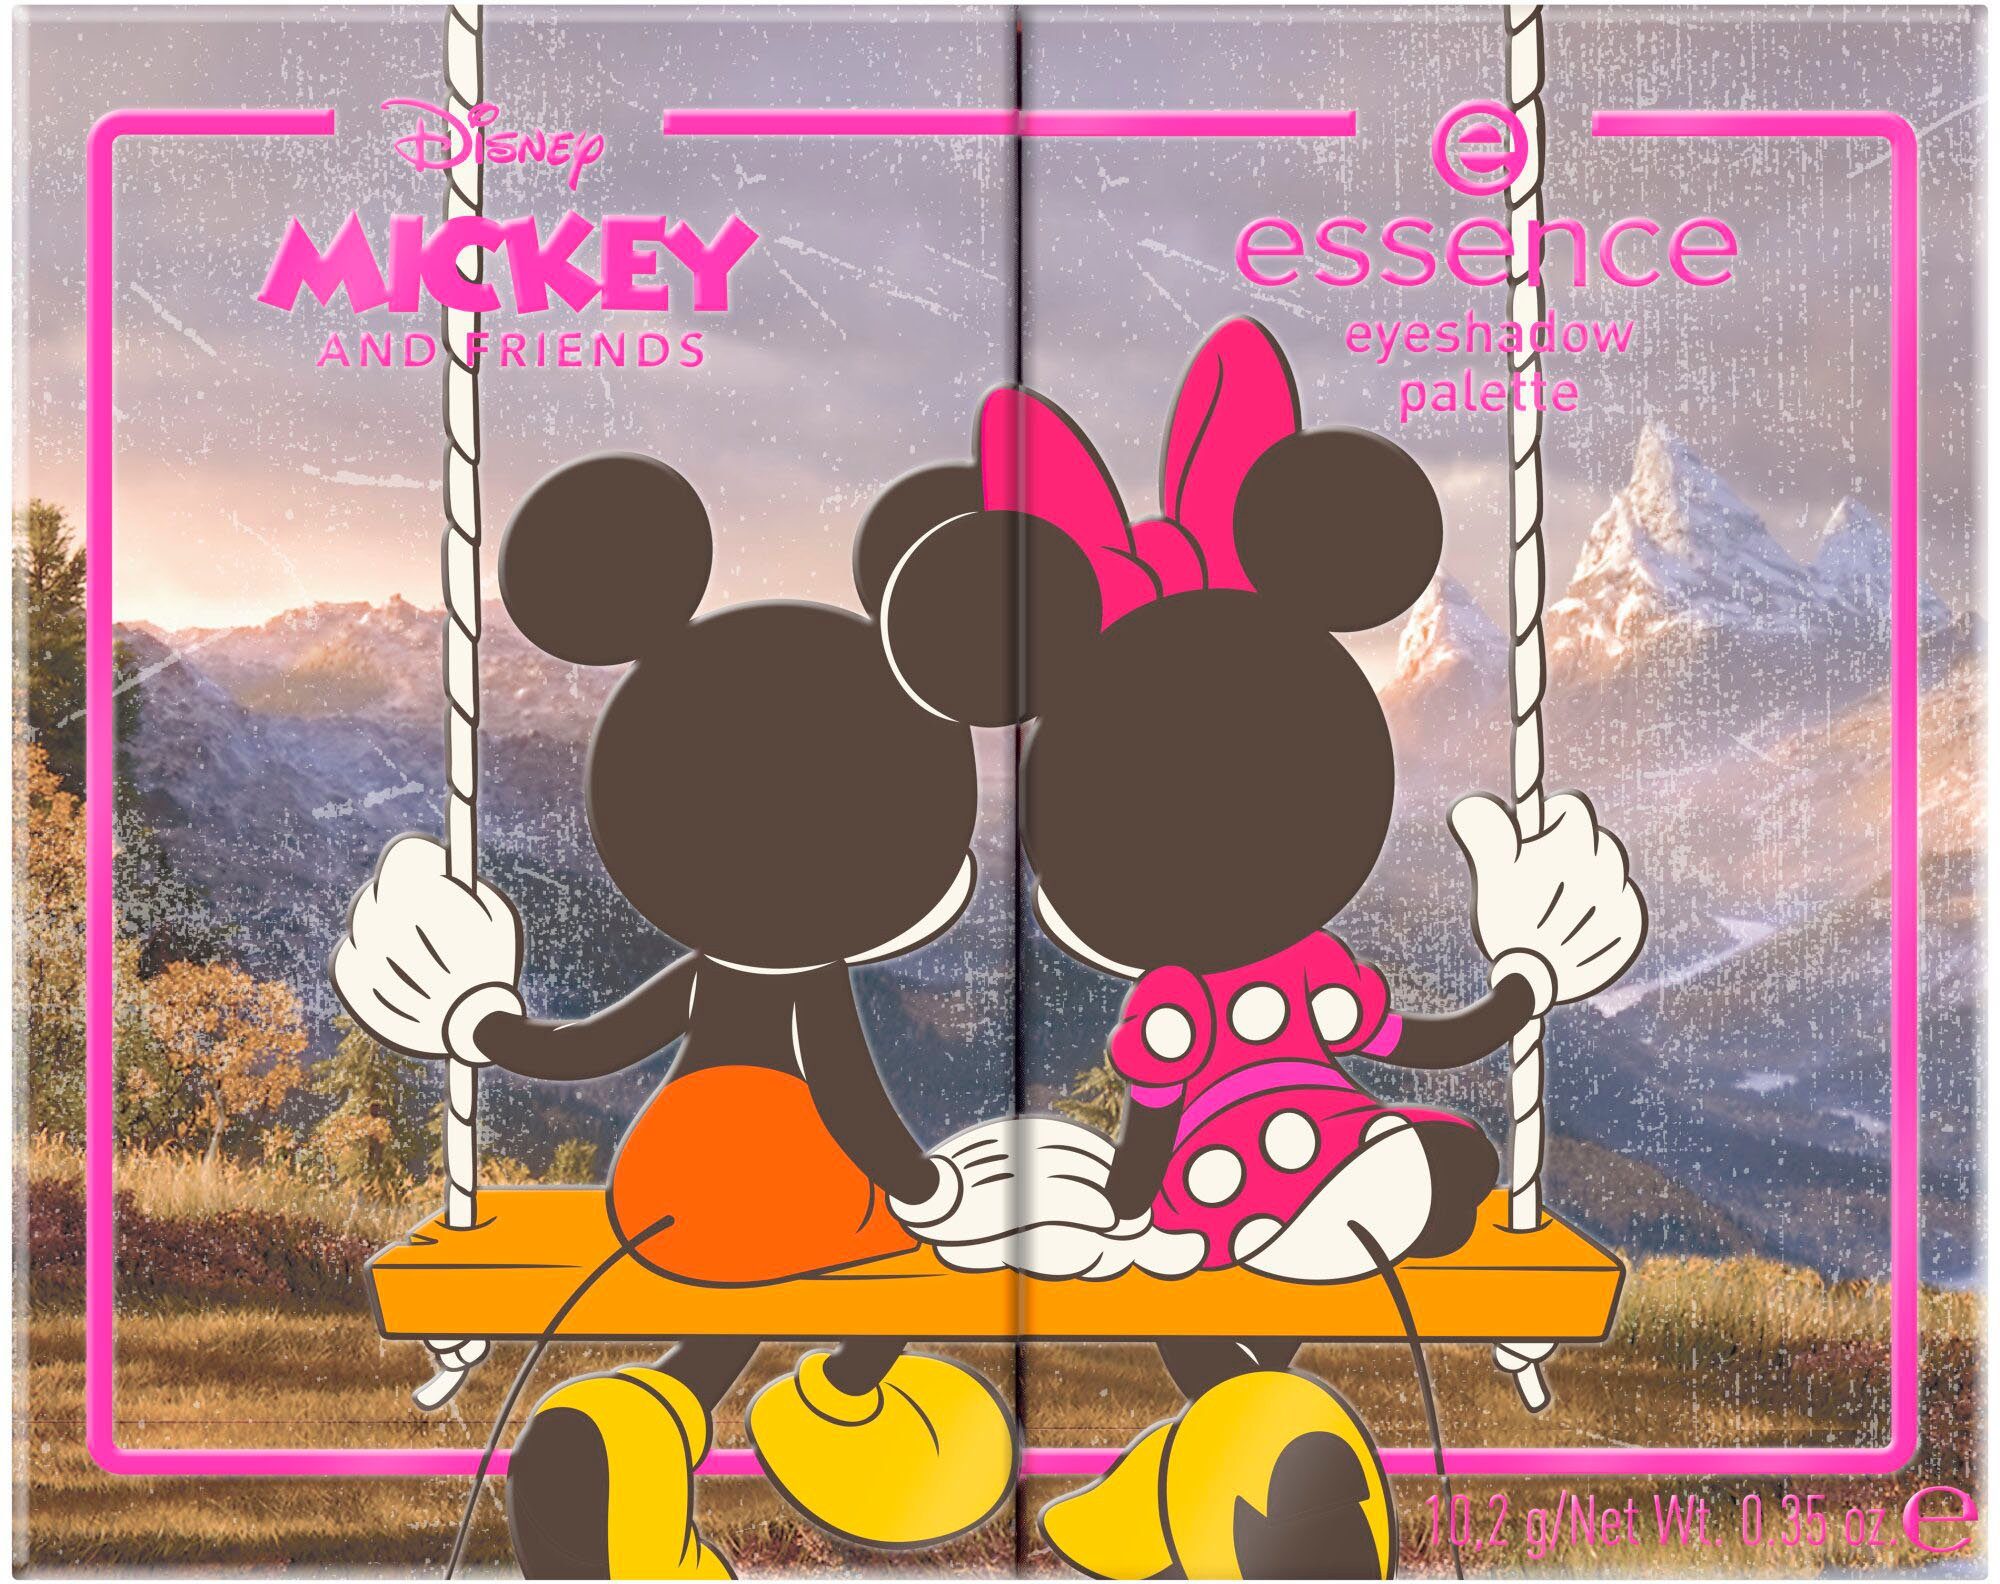 Augen-Make-Up für Looks Friends palette, eyeshadow and Mickey abwechslungsreiche Disney Lidschatten-Palette Essence